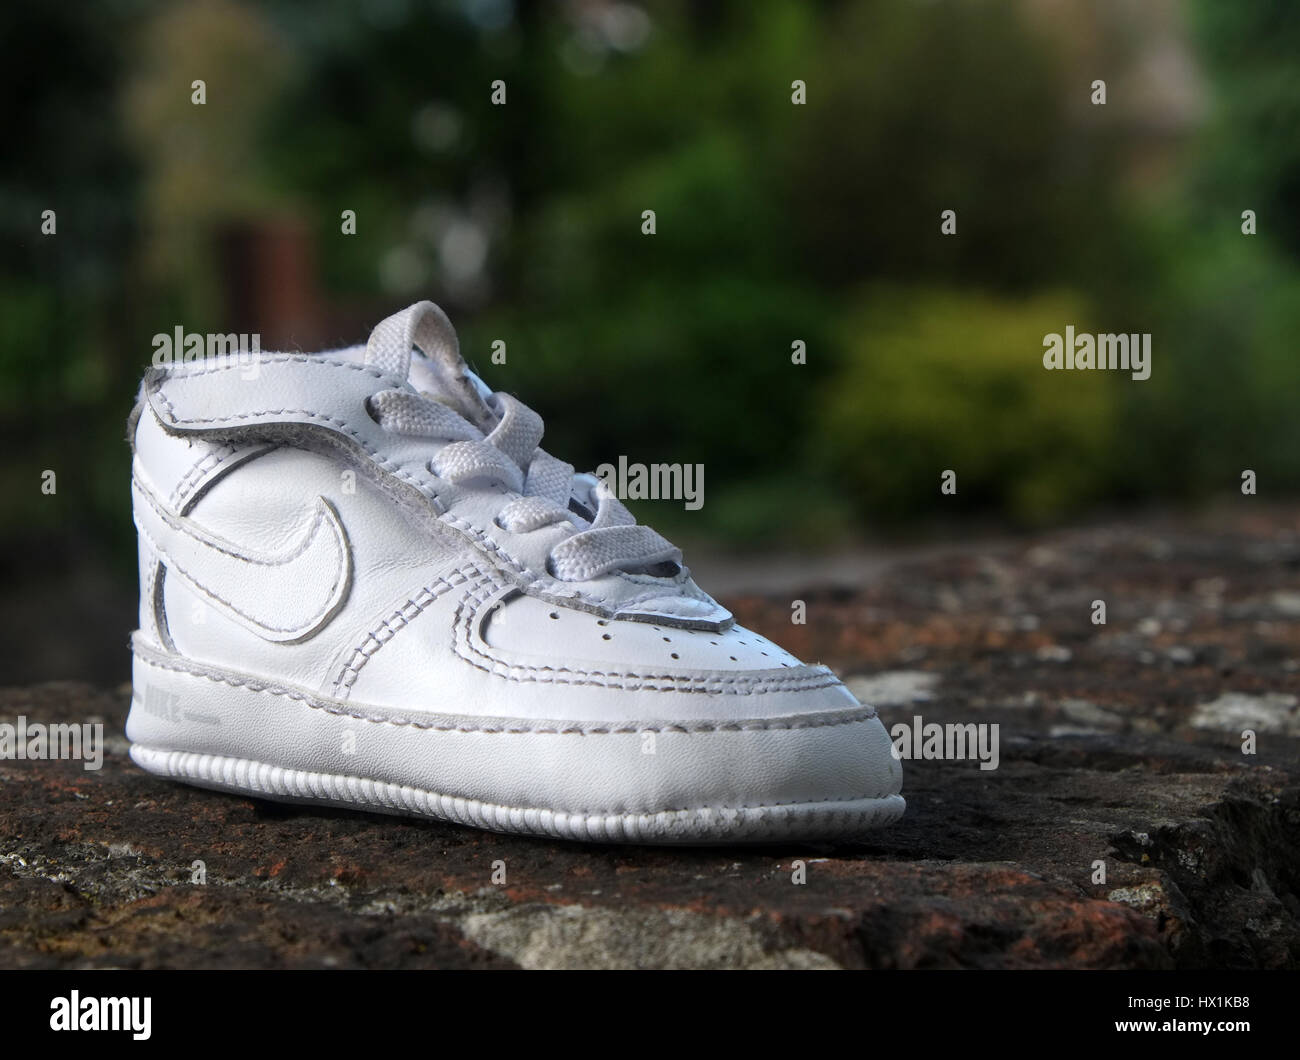 El 21 de junio de 2016 - Blanco Nike zapato bebé perdido y encontrado Fotografía de stock Alamy